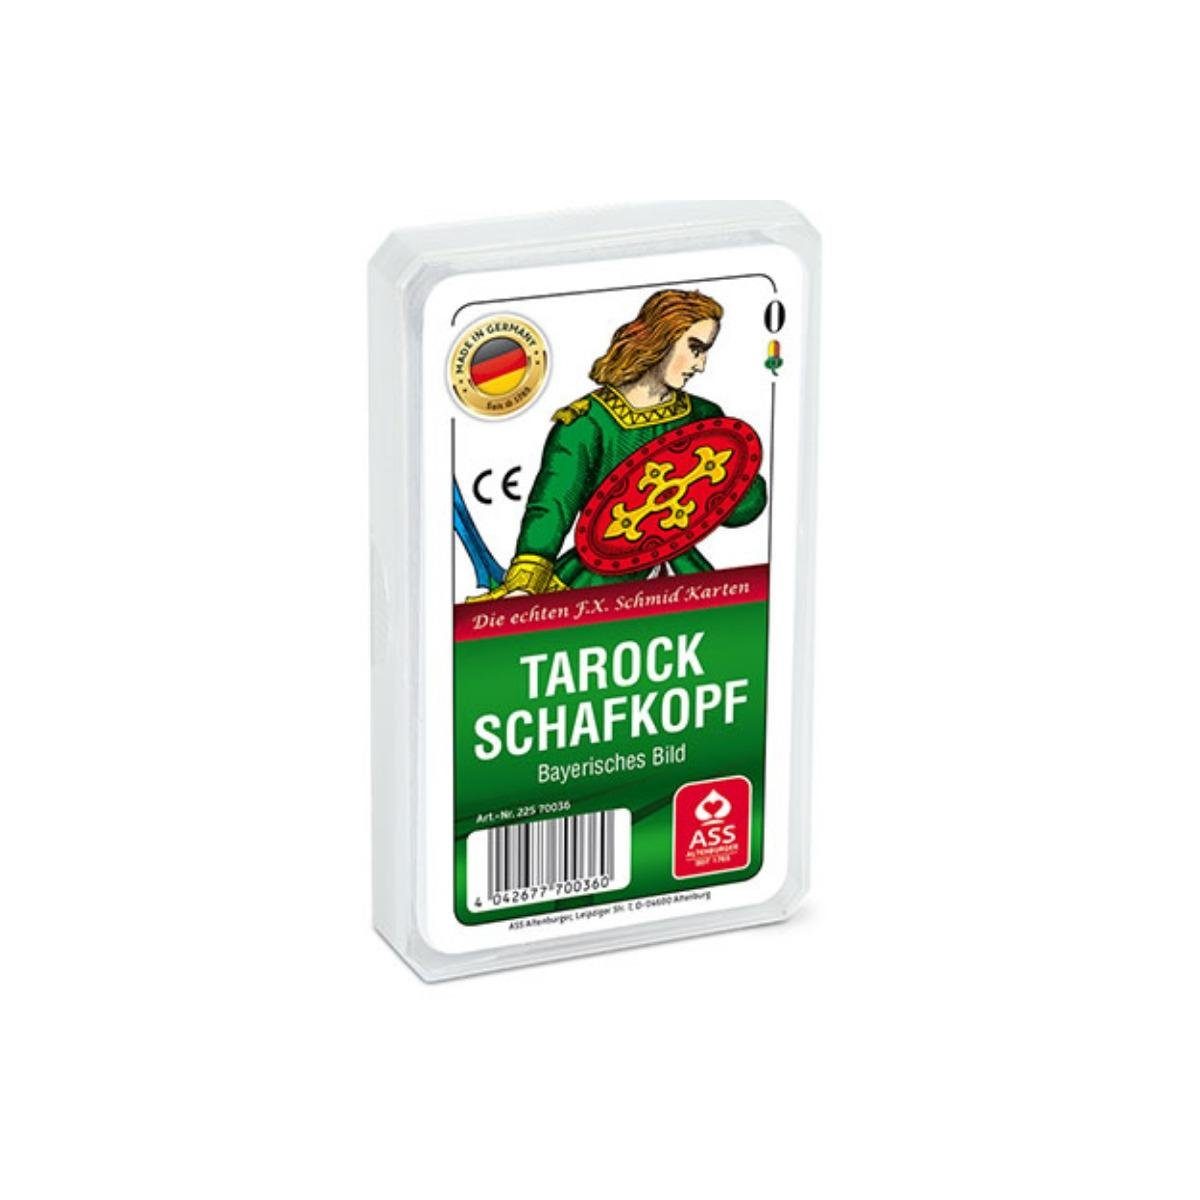 ASS Altenburger Spiel, Familienspiel 22570036 - Schafkopf/Tarock, Bayerisches Bild (Kunststoffetui) | Spiele